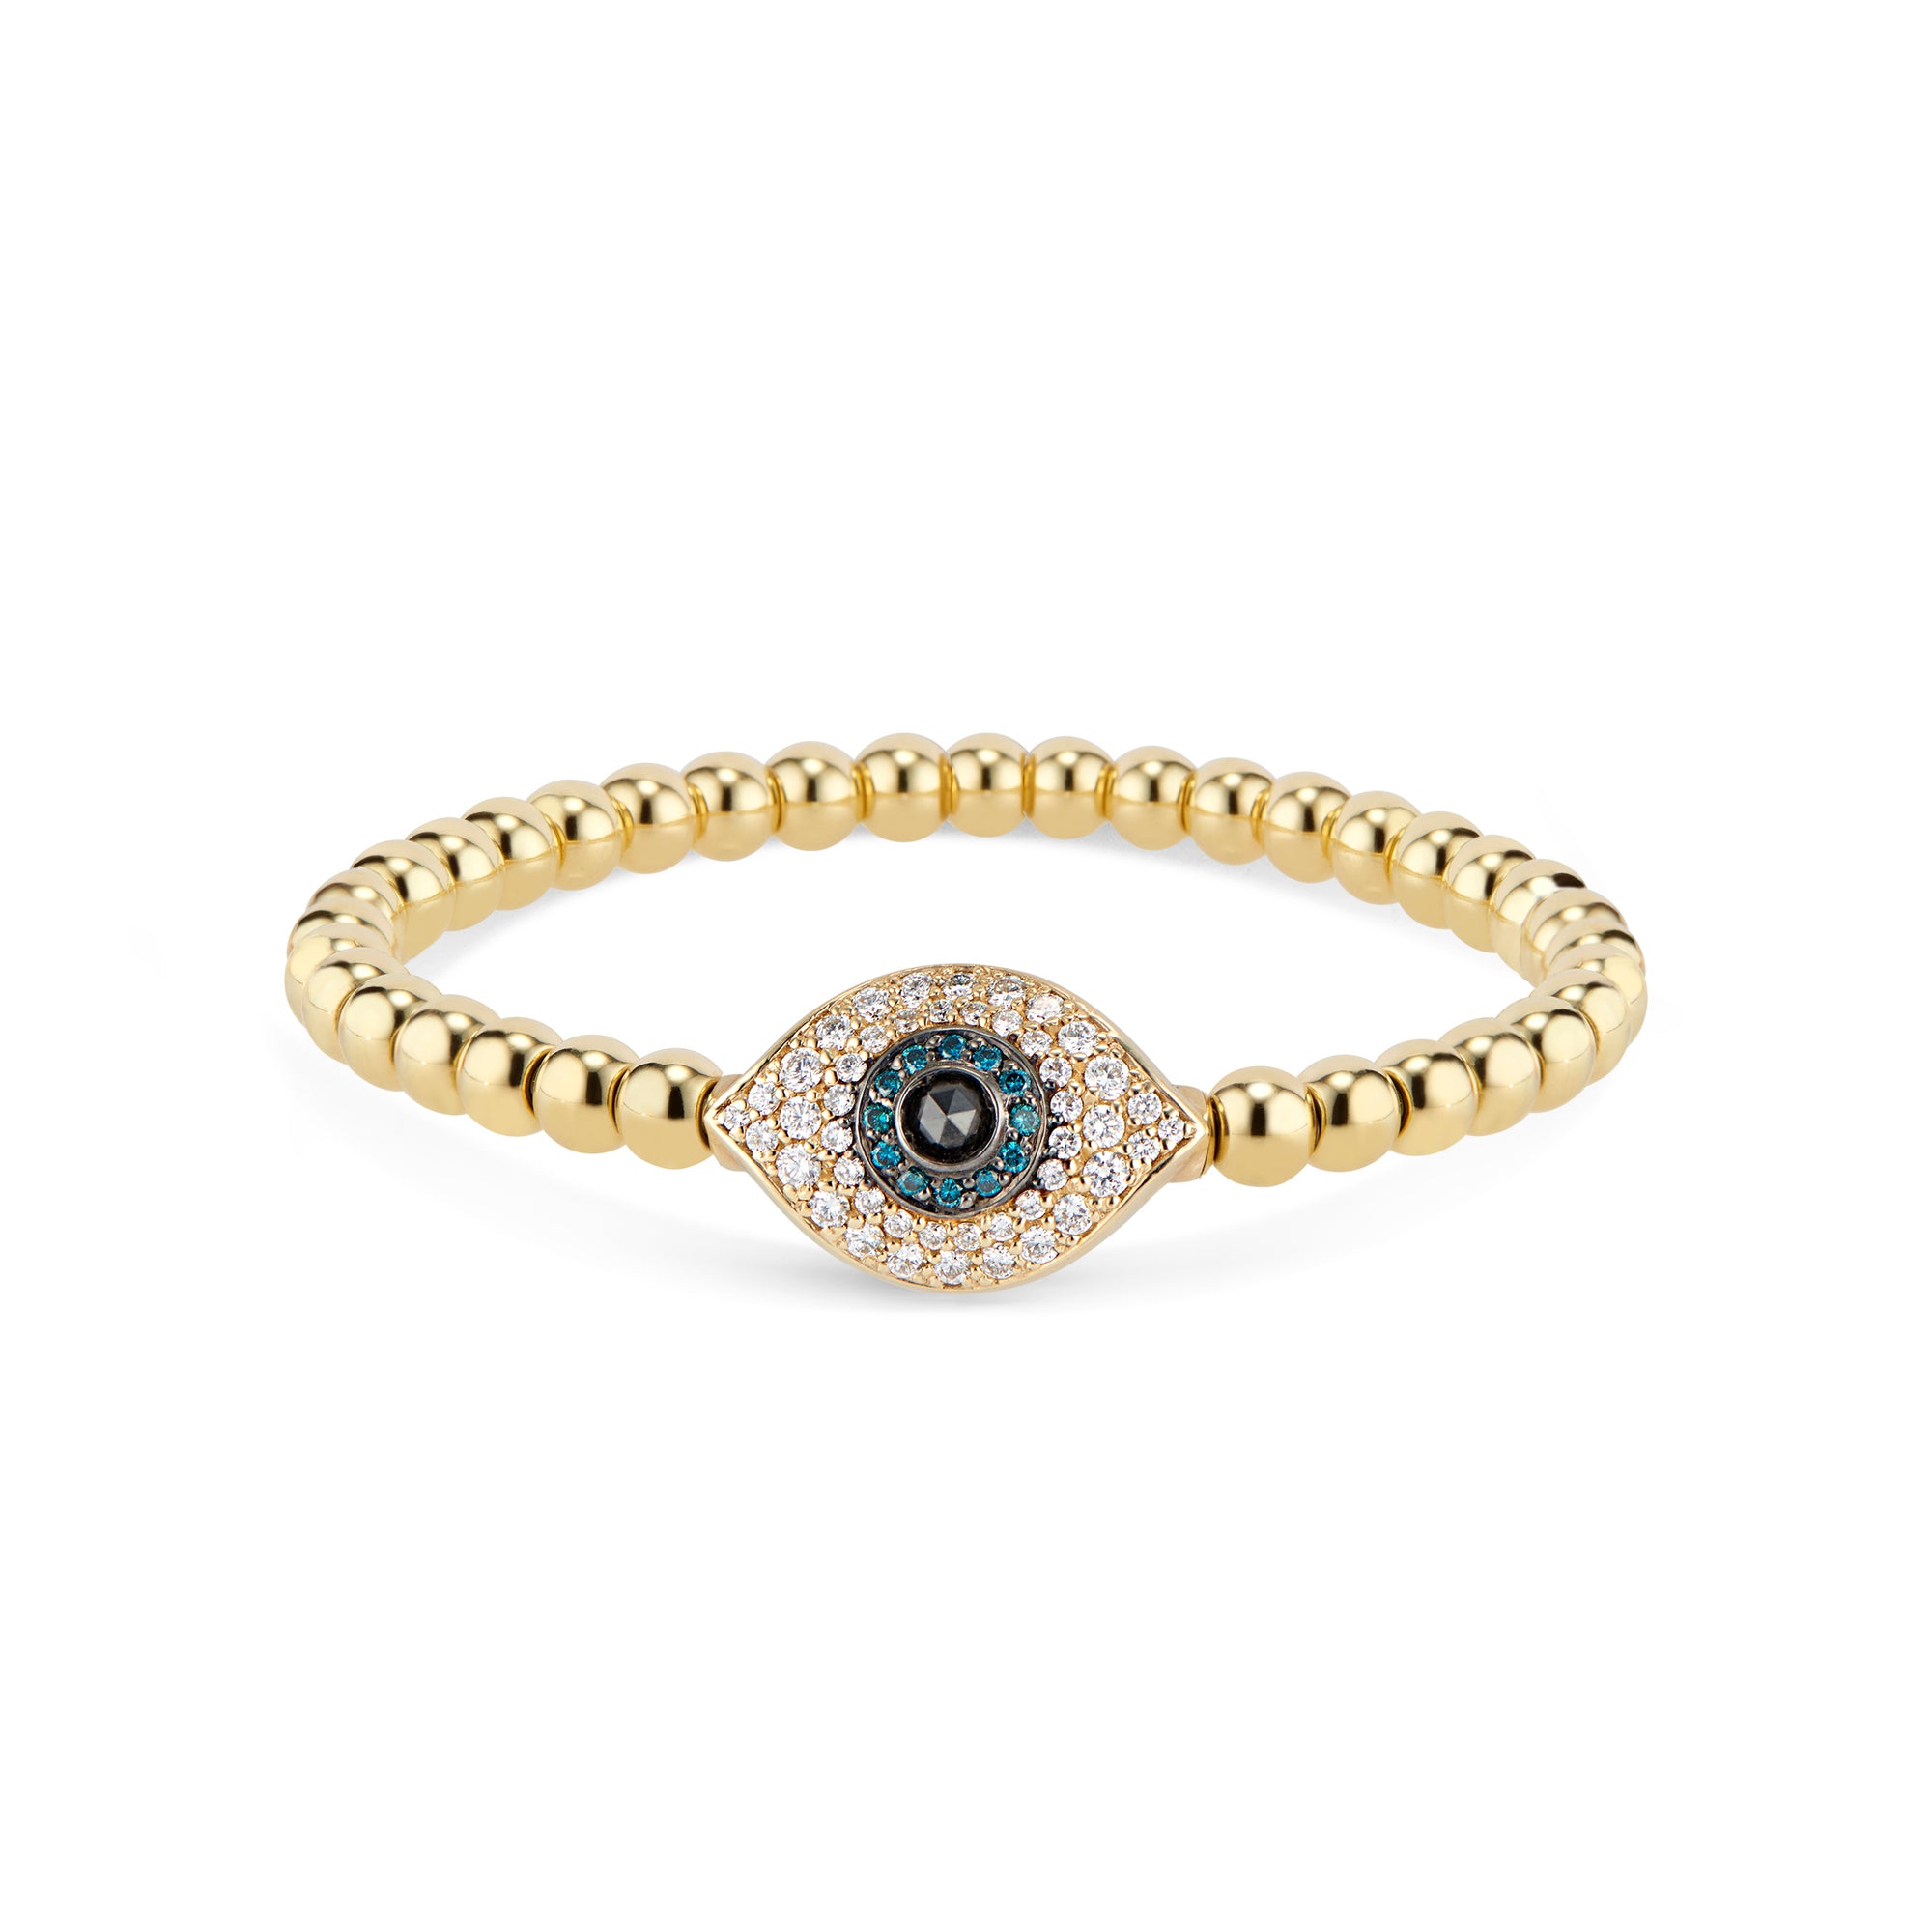 Diamond Evil Eye Stretch Bracelet - 0.54 cts colorless round diamonds - 0.09 cts black diamonds - 0.14 cts blue diamonds